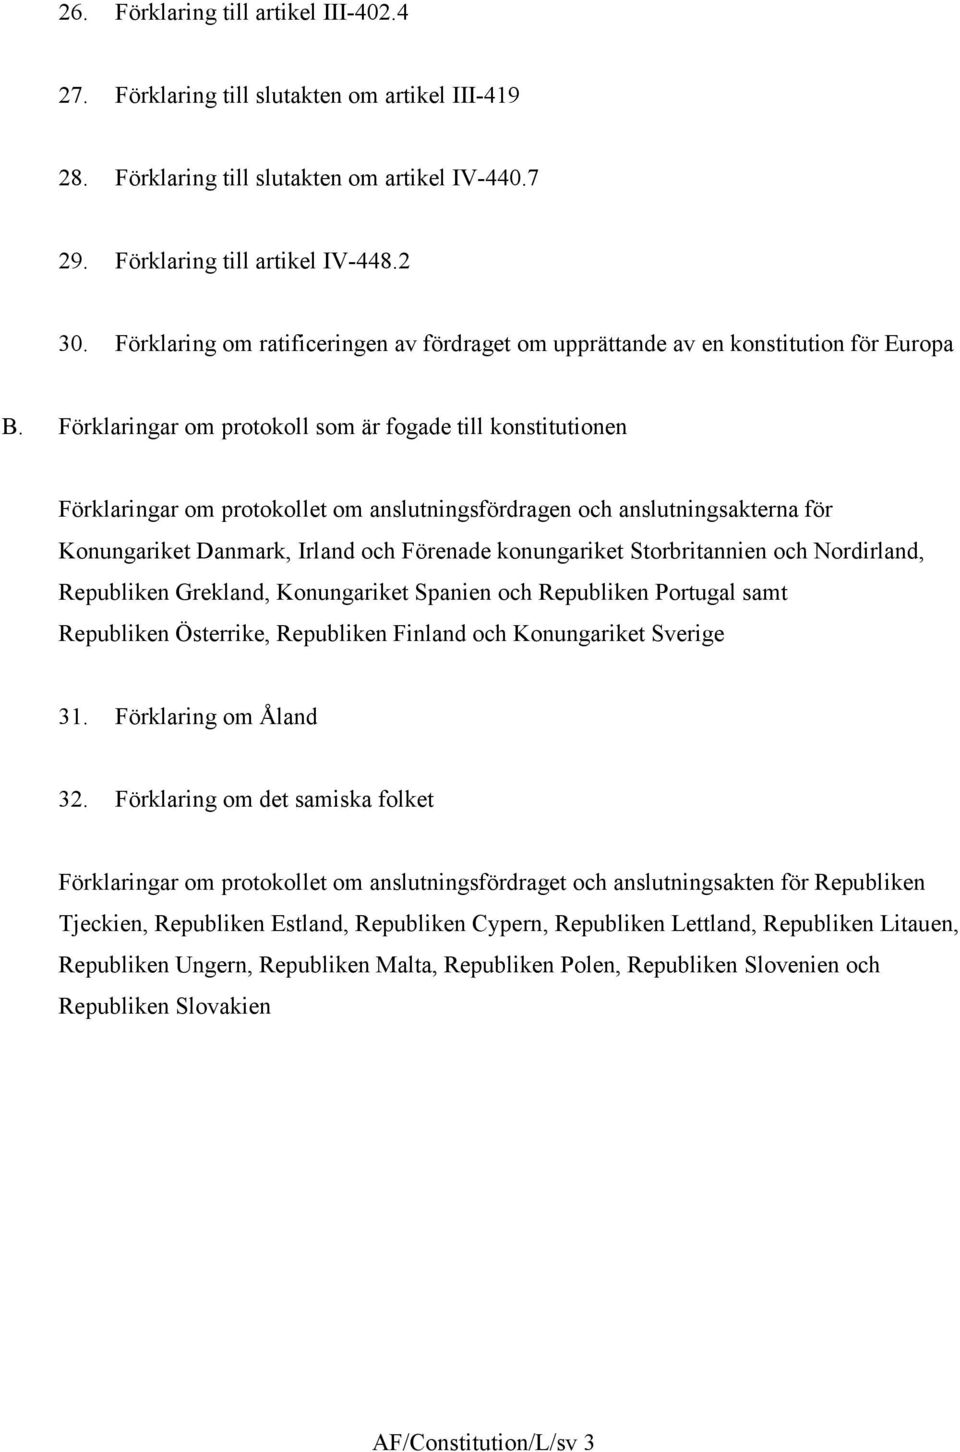 Förklaringar om protokoll som är fogade till konstitutionen Förklaringar om protokollet om anslutningsfördragen och anslutningsakterna för Konungariket Danmark, Irland och Förenade konungariket